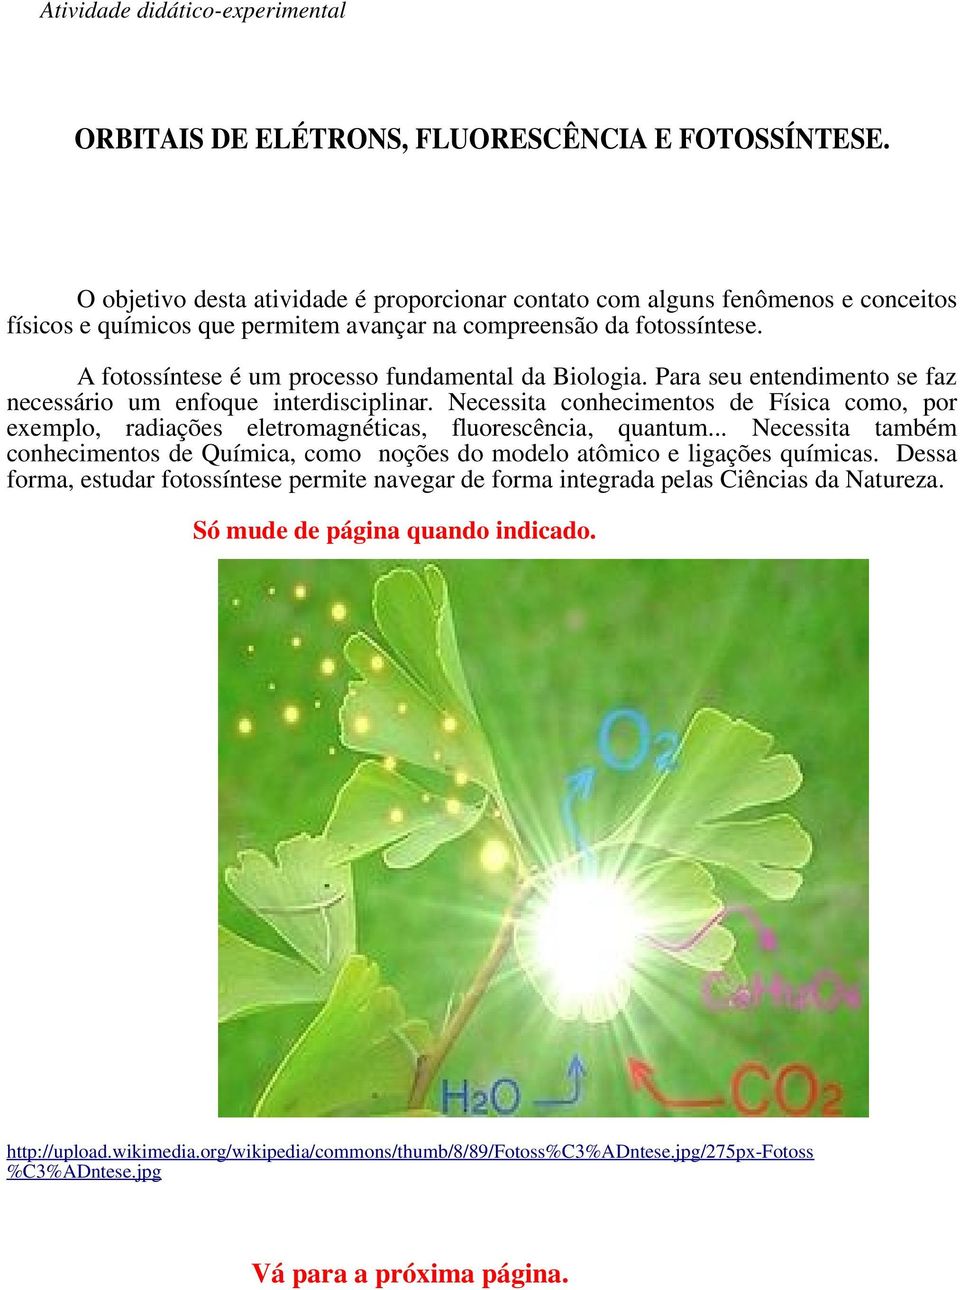 A fotossíntese é um processo fundamental da Biologia. Para seu entendimento se faz necessário um enfoque interdisciplinar.